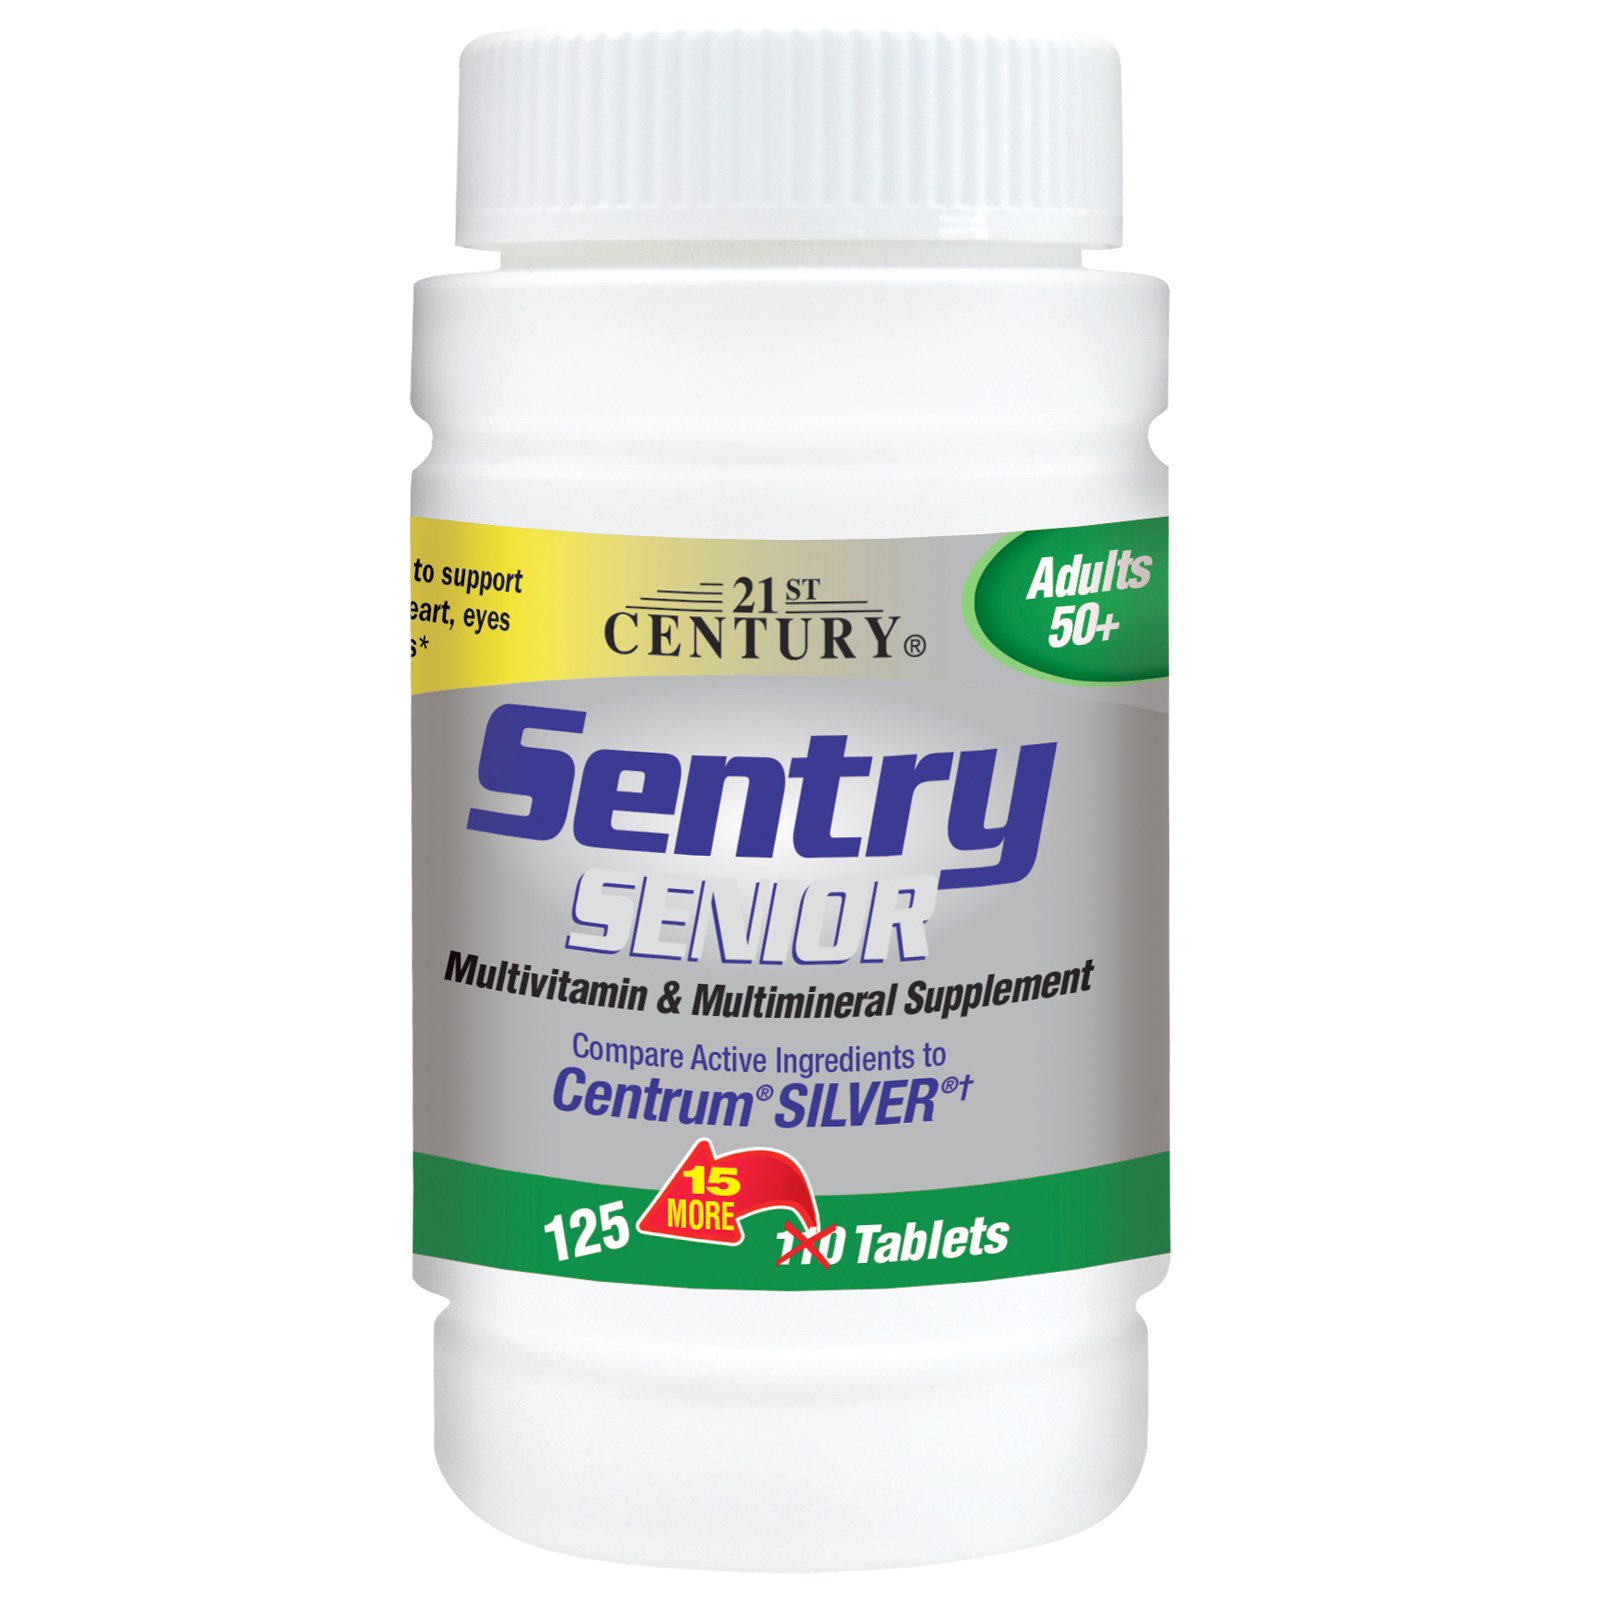 21st Century, Sentry Senior, мультивитаминная и мультиминеральная добавка, для взрослых старше 50 лет, 125 таблеток